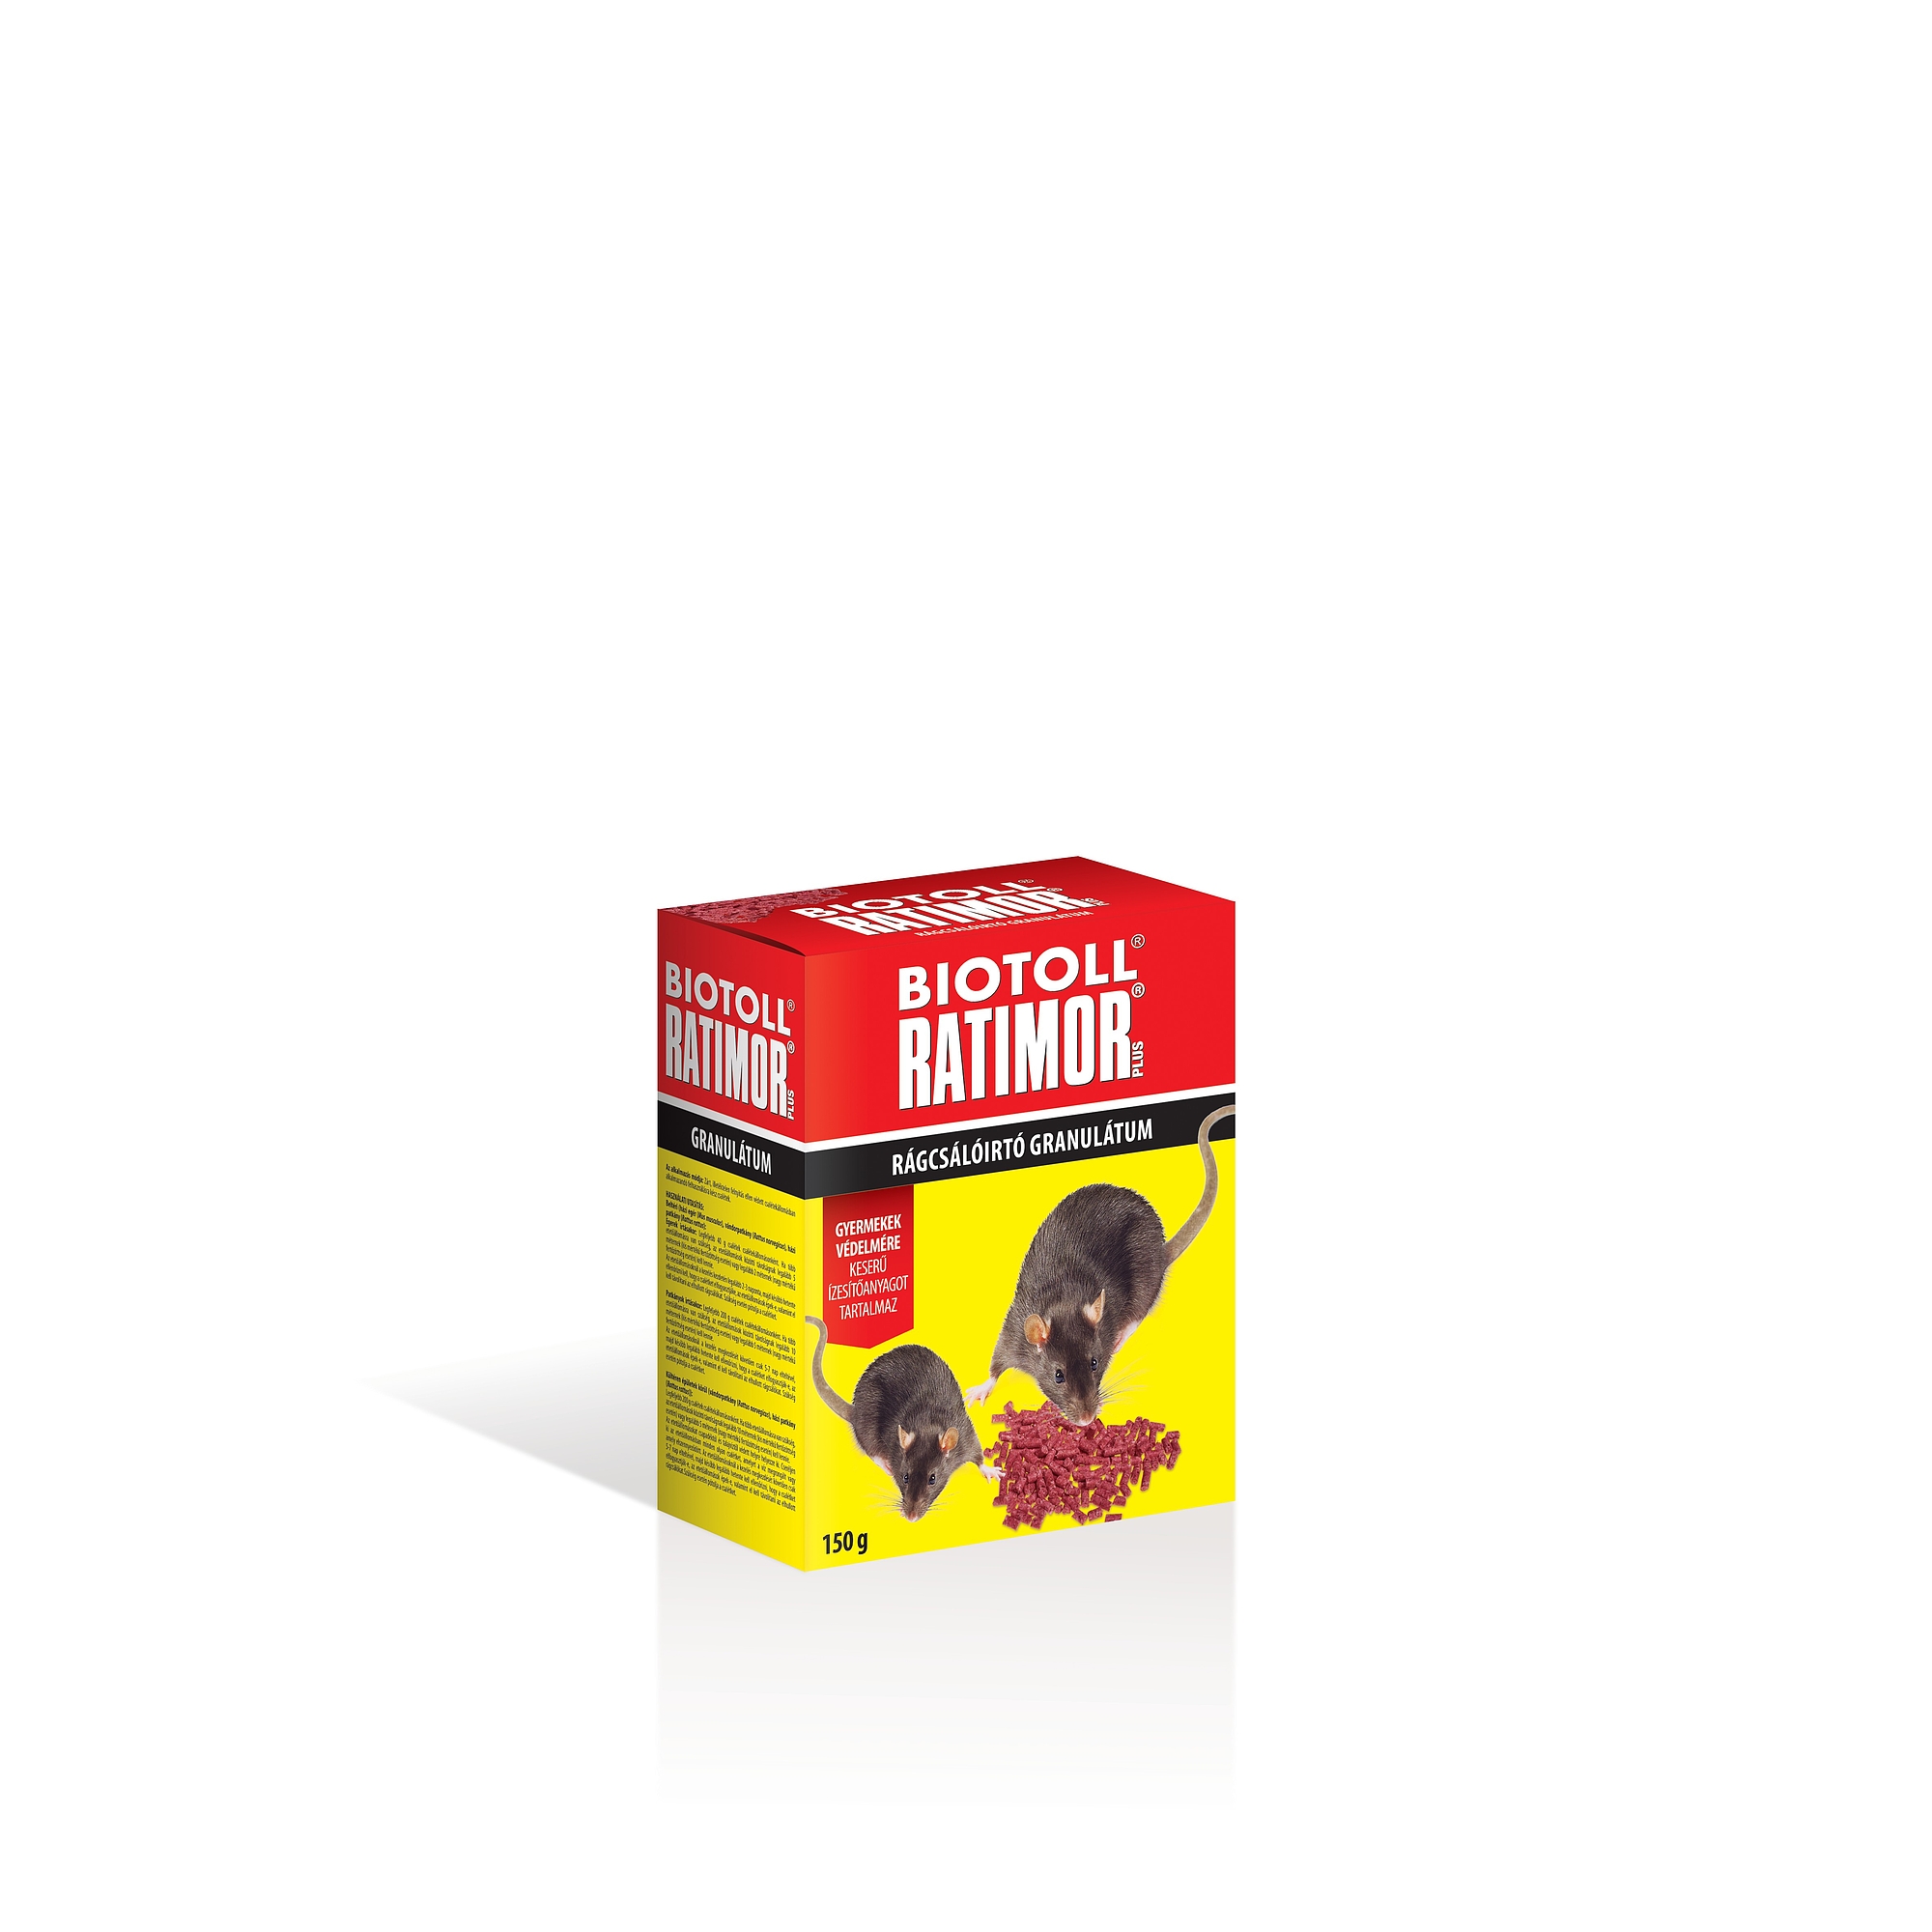 Biotoll Ratimor + Pellet 150g Box 52822